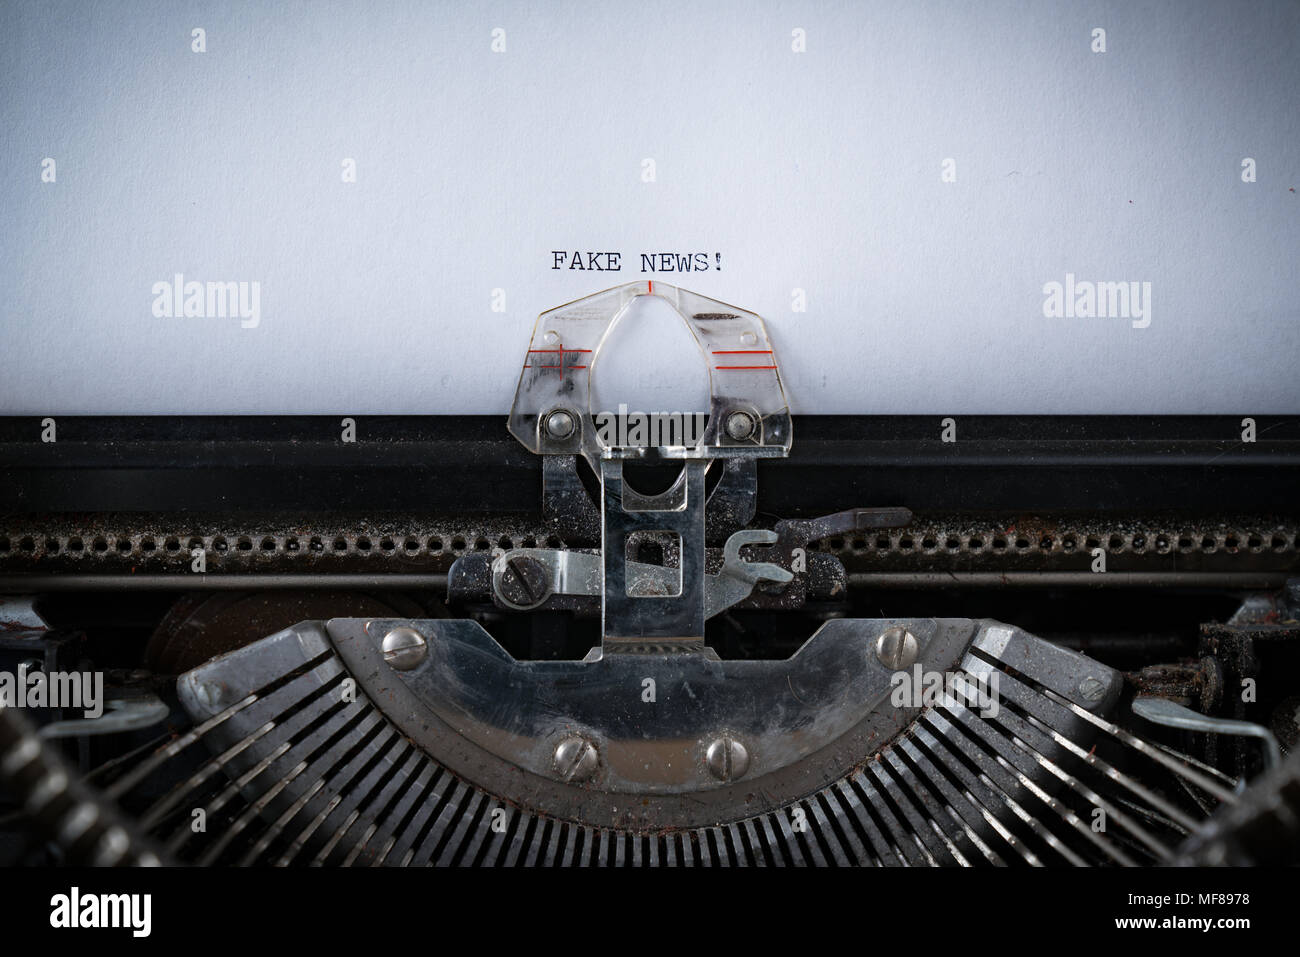 L'expression de fausses nouvelles tapé sur une vieille machine à écrire Banque D'Images